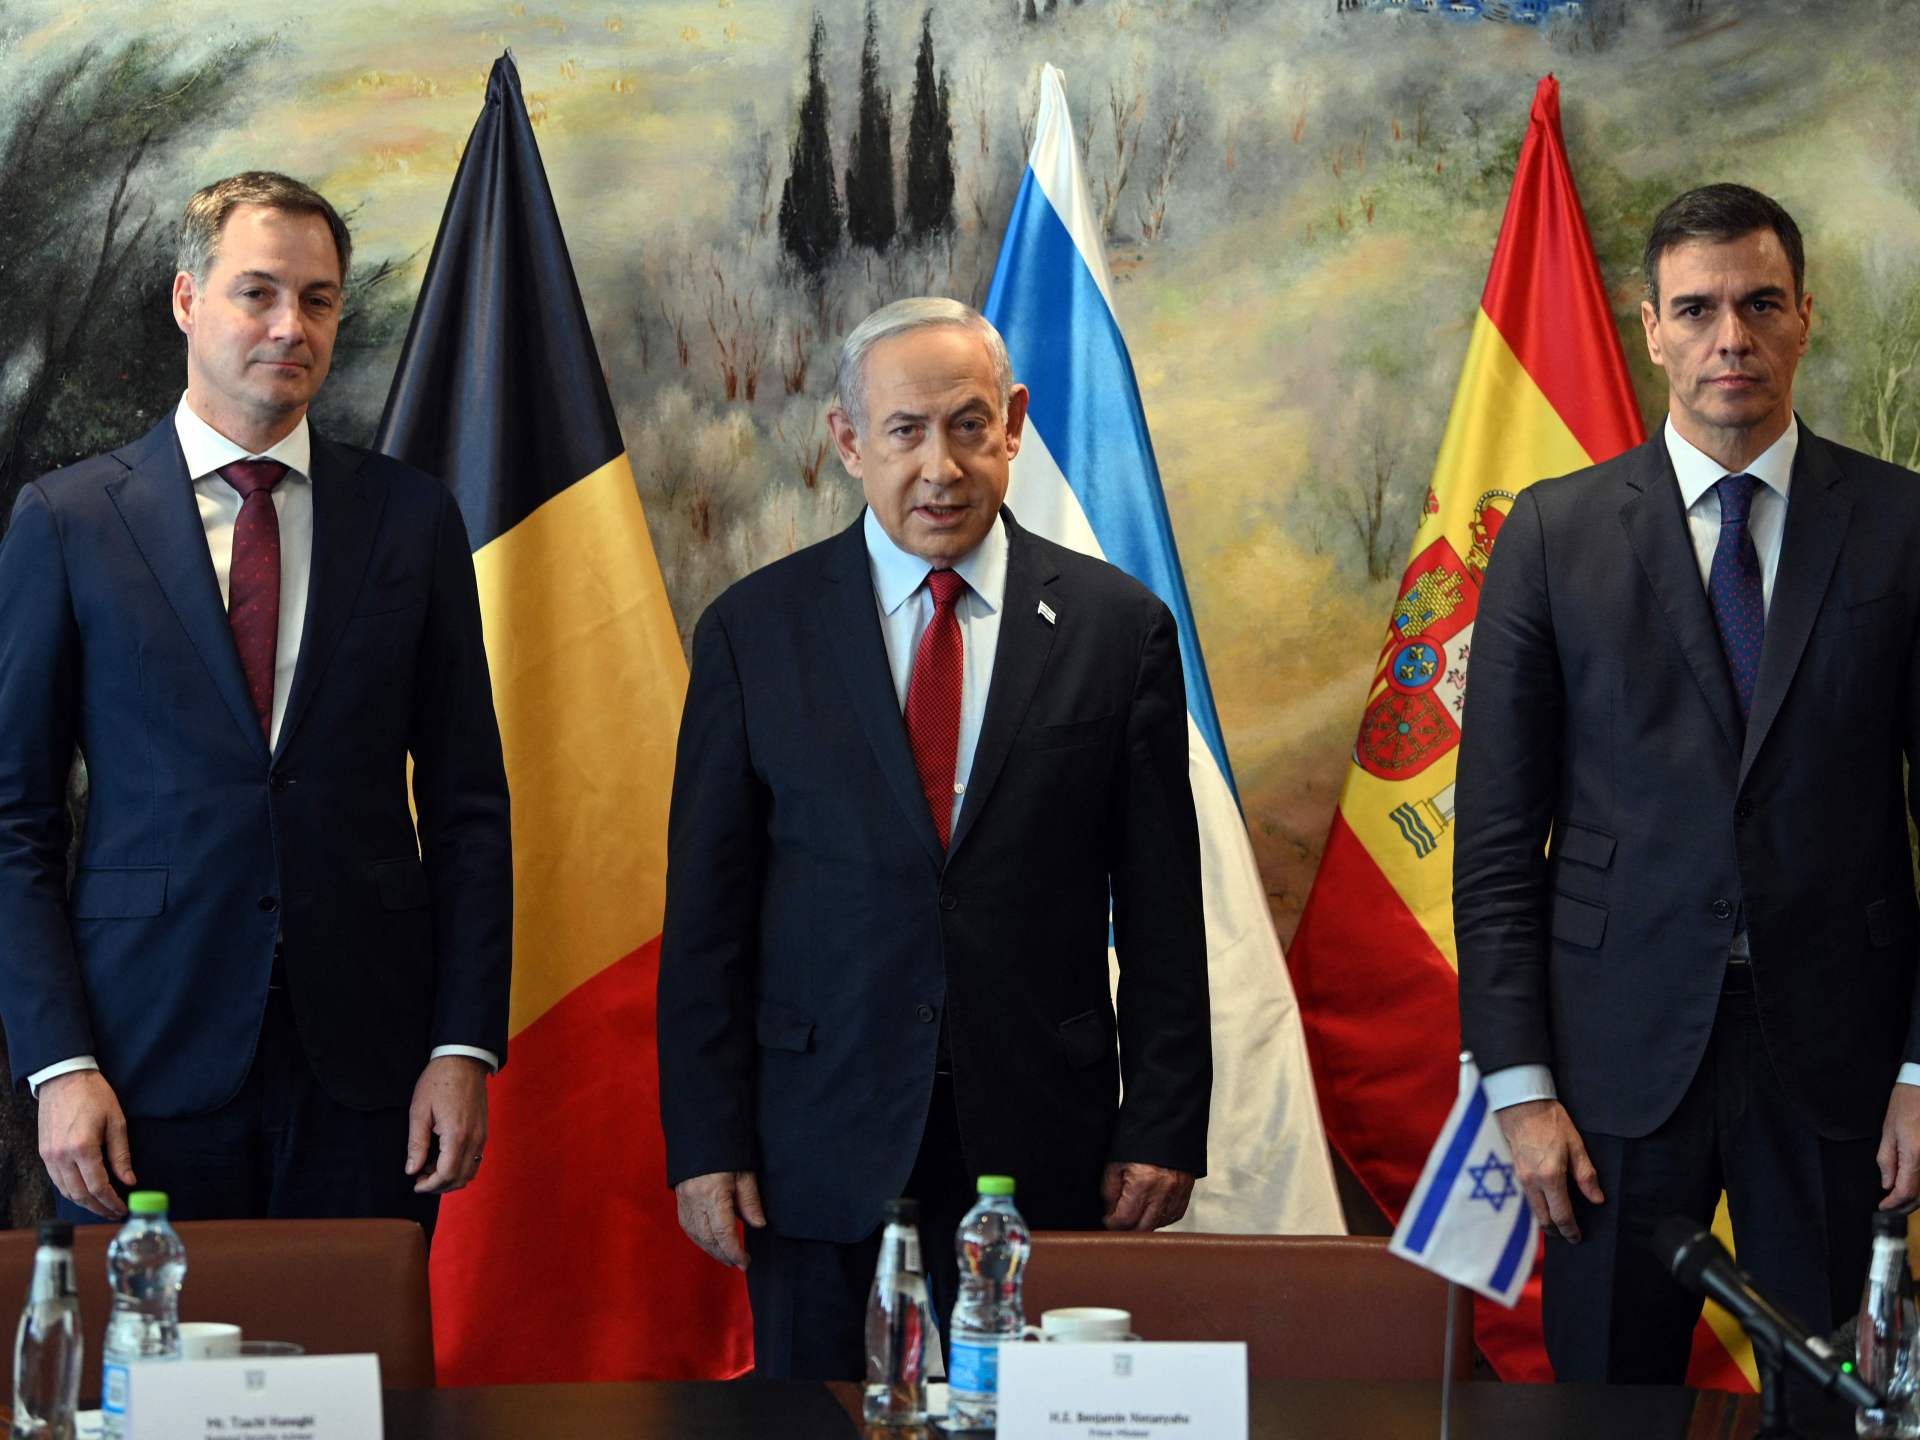 غضب إسرائيلي من تصريحات إسبانيا وبلجيكا واستدعاء متبادل للسفراء | أخبار – البوكس نيوز